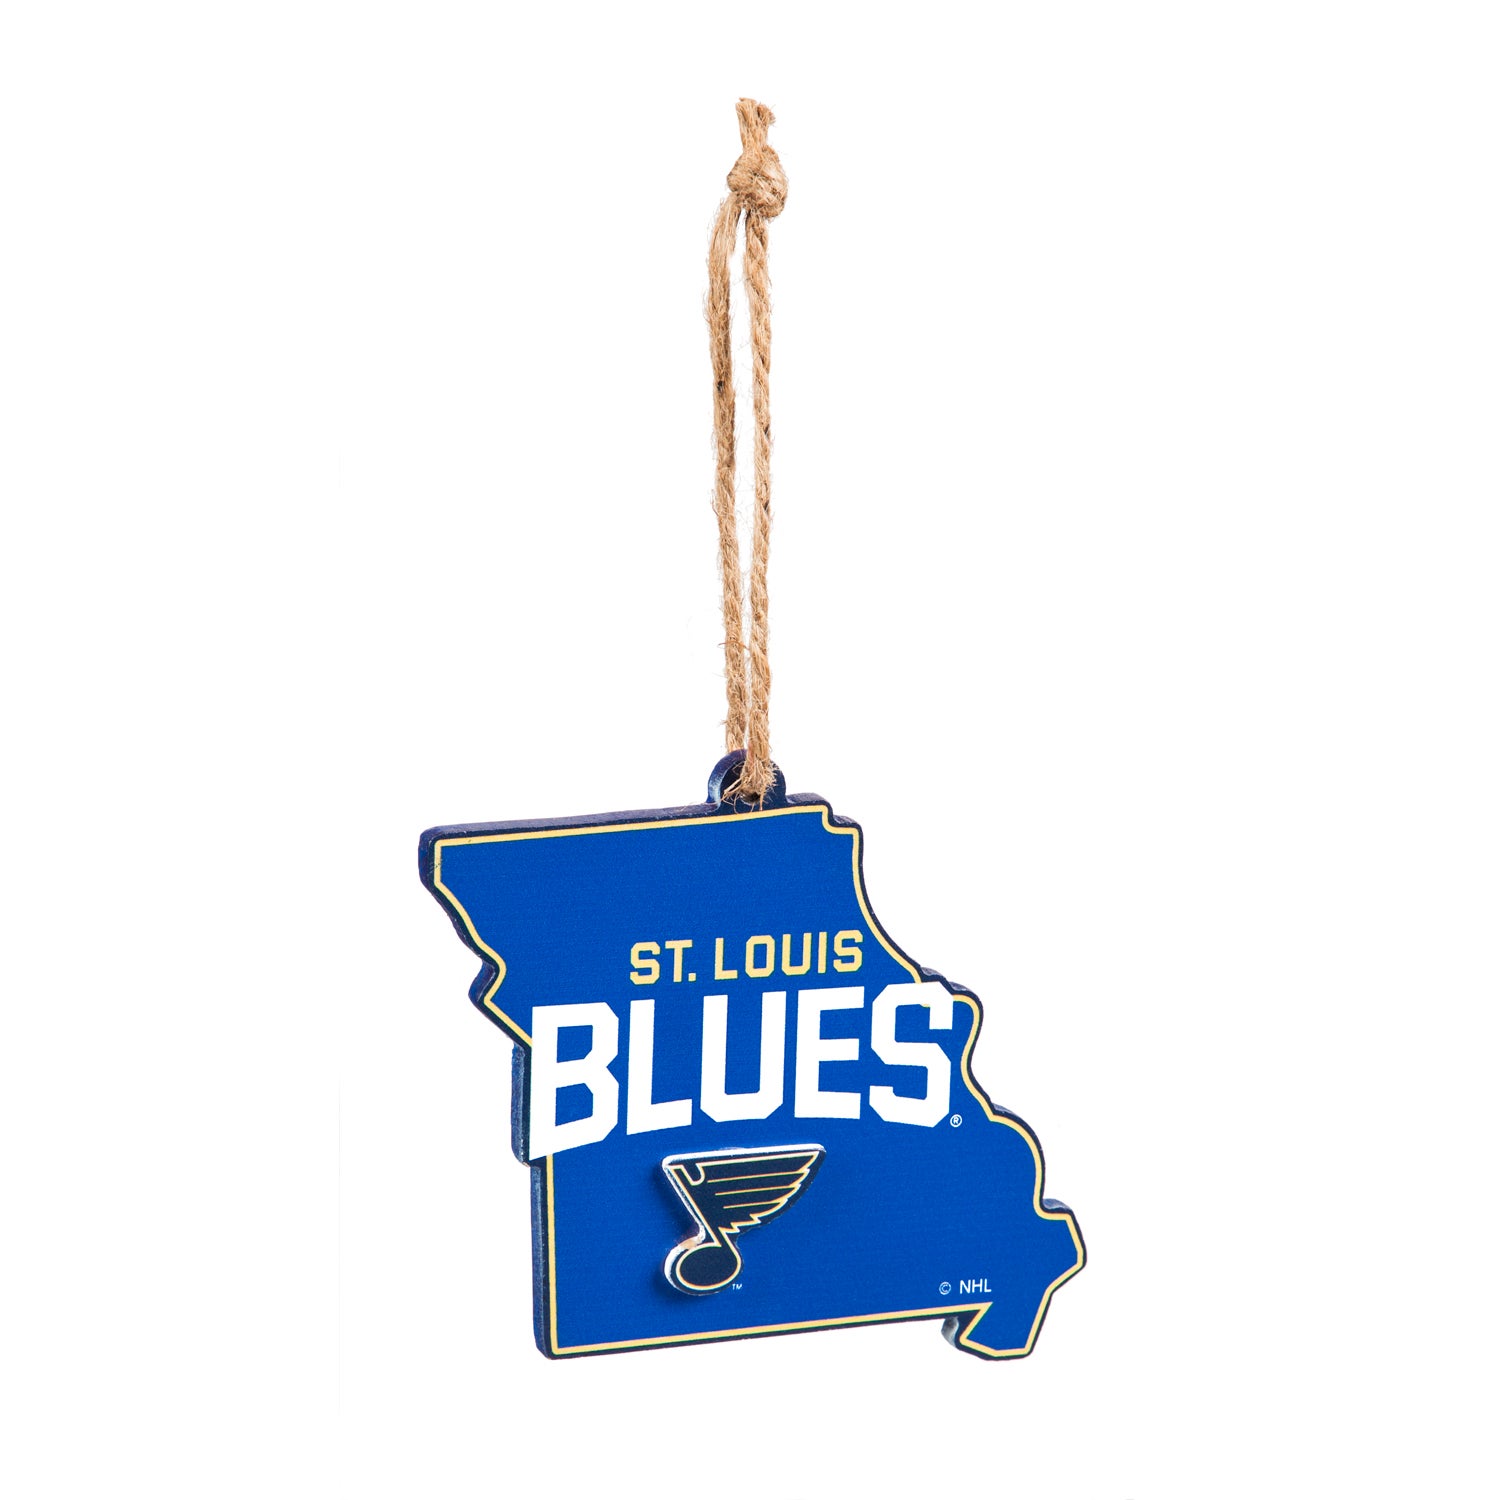 St. Louis Blues Mascot Statue